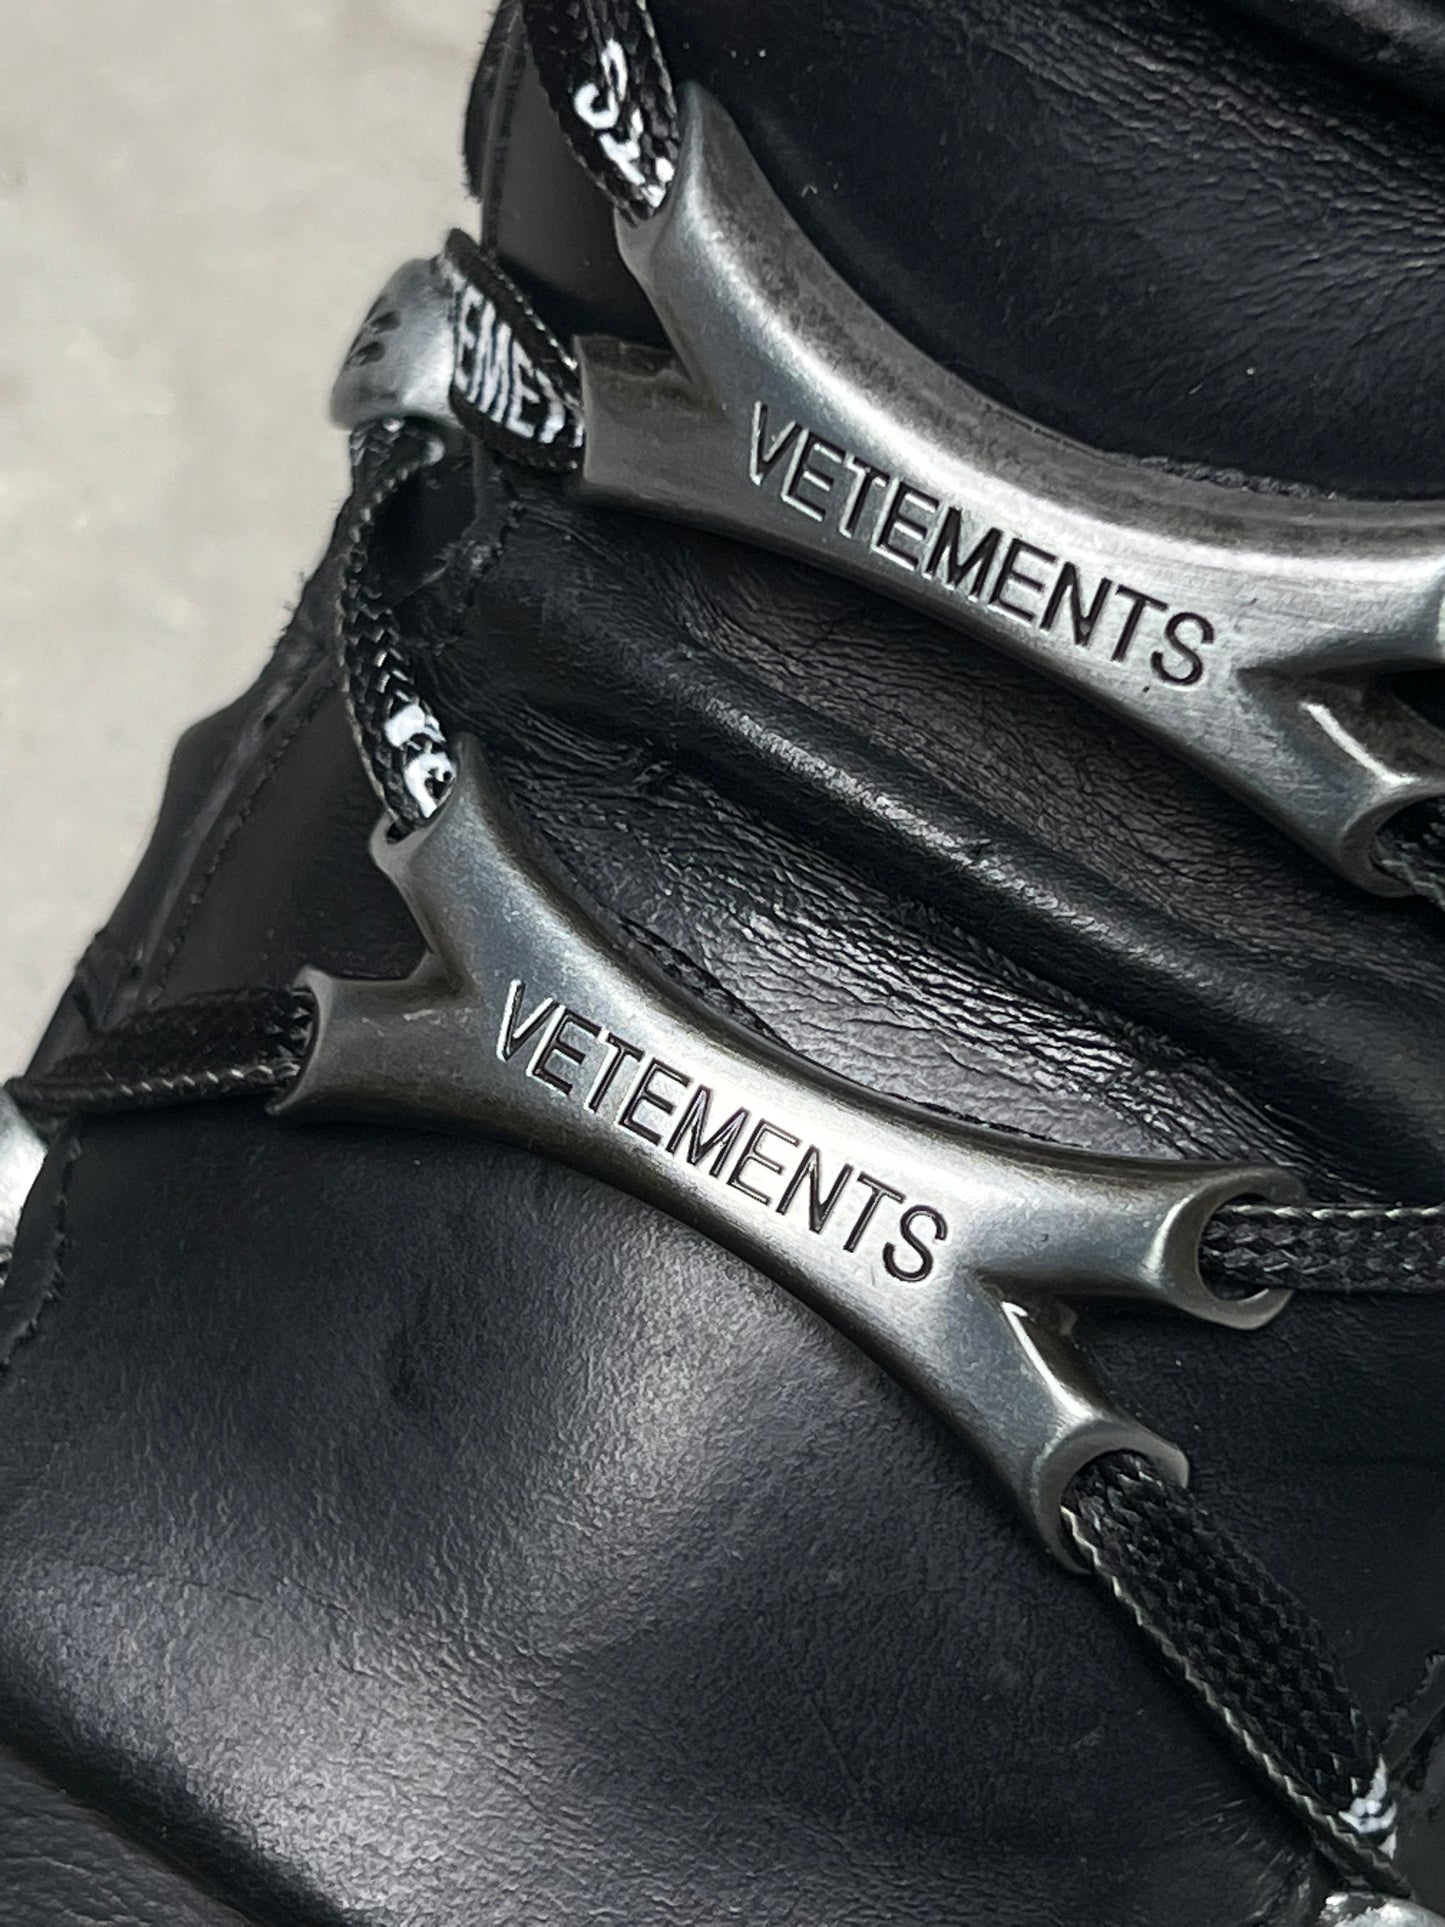 VETEMENTS x New Rock Platform Sneakers